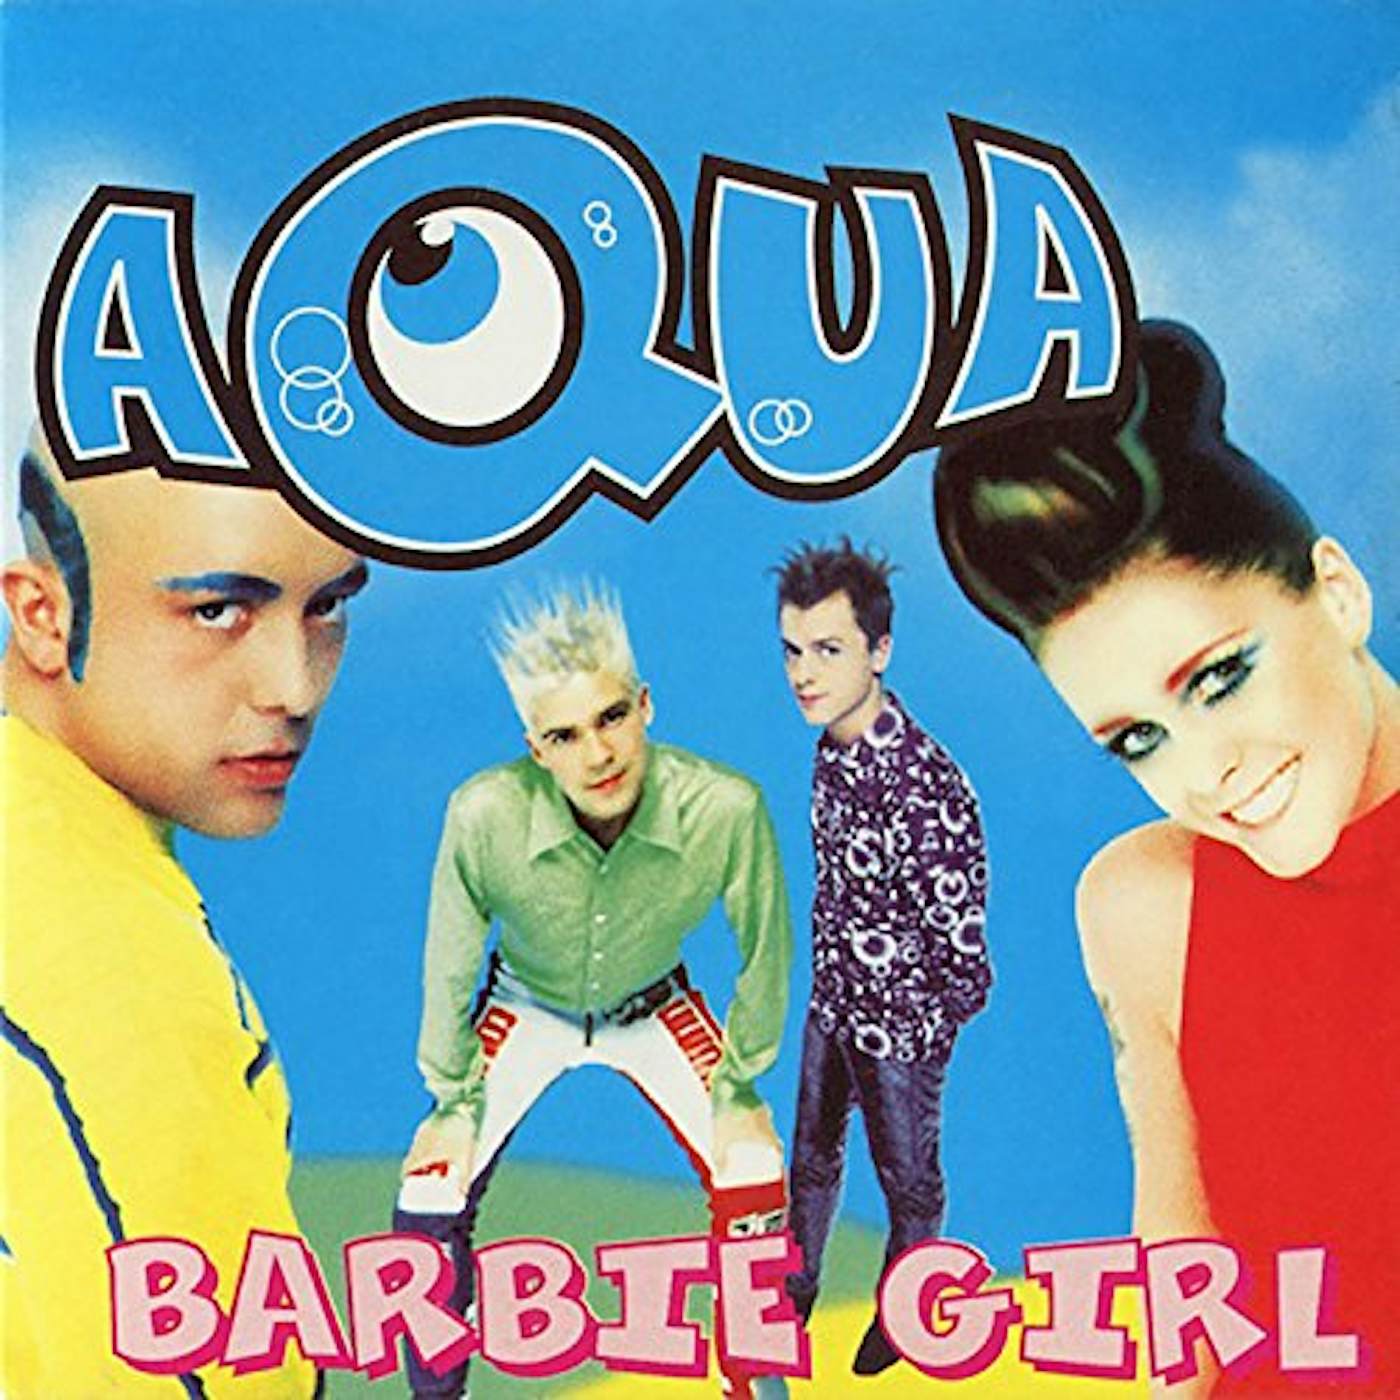 Aqua Barbie Girl Vinyl Record